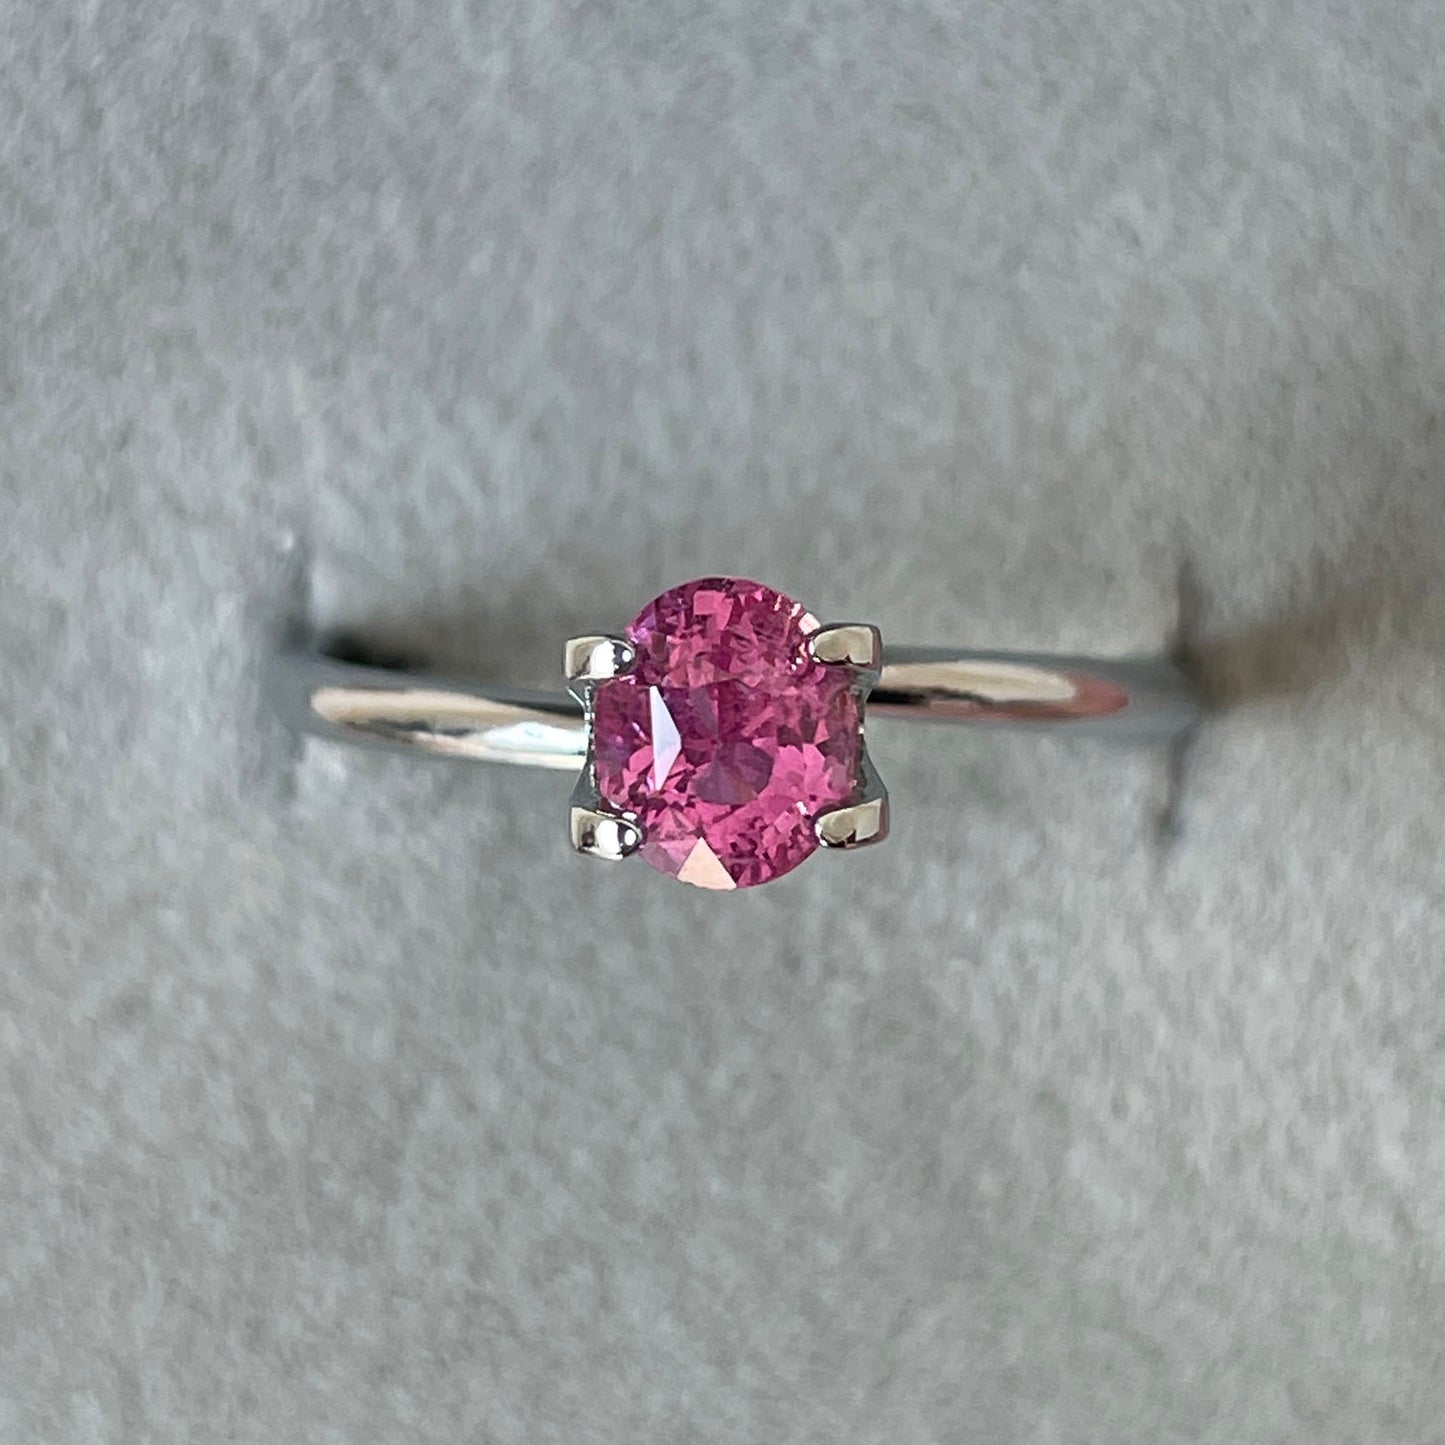 1.08 crt ceylon Pink Sapphire, sakura Pink Sapphire, Loose Gemstone Cut, Loose Sapphire Gemstone Excellent Quality Jewelry Making